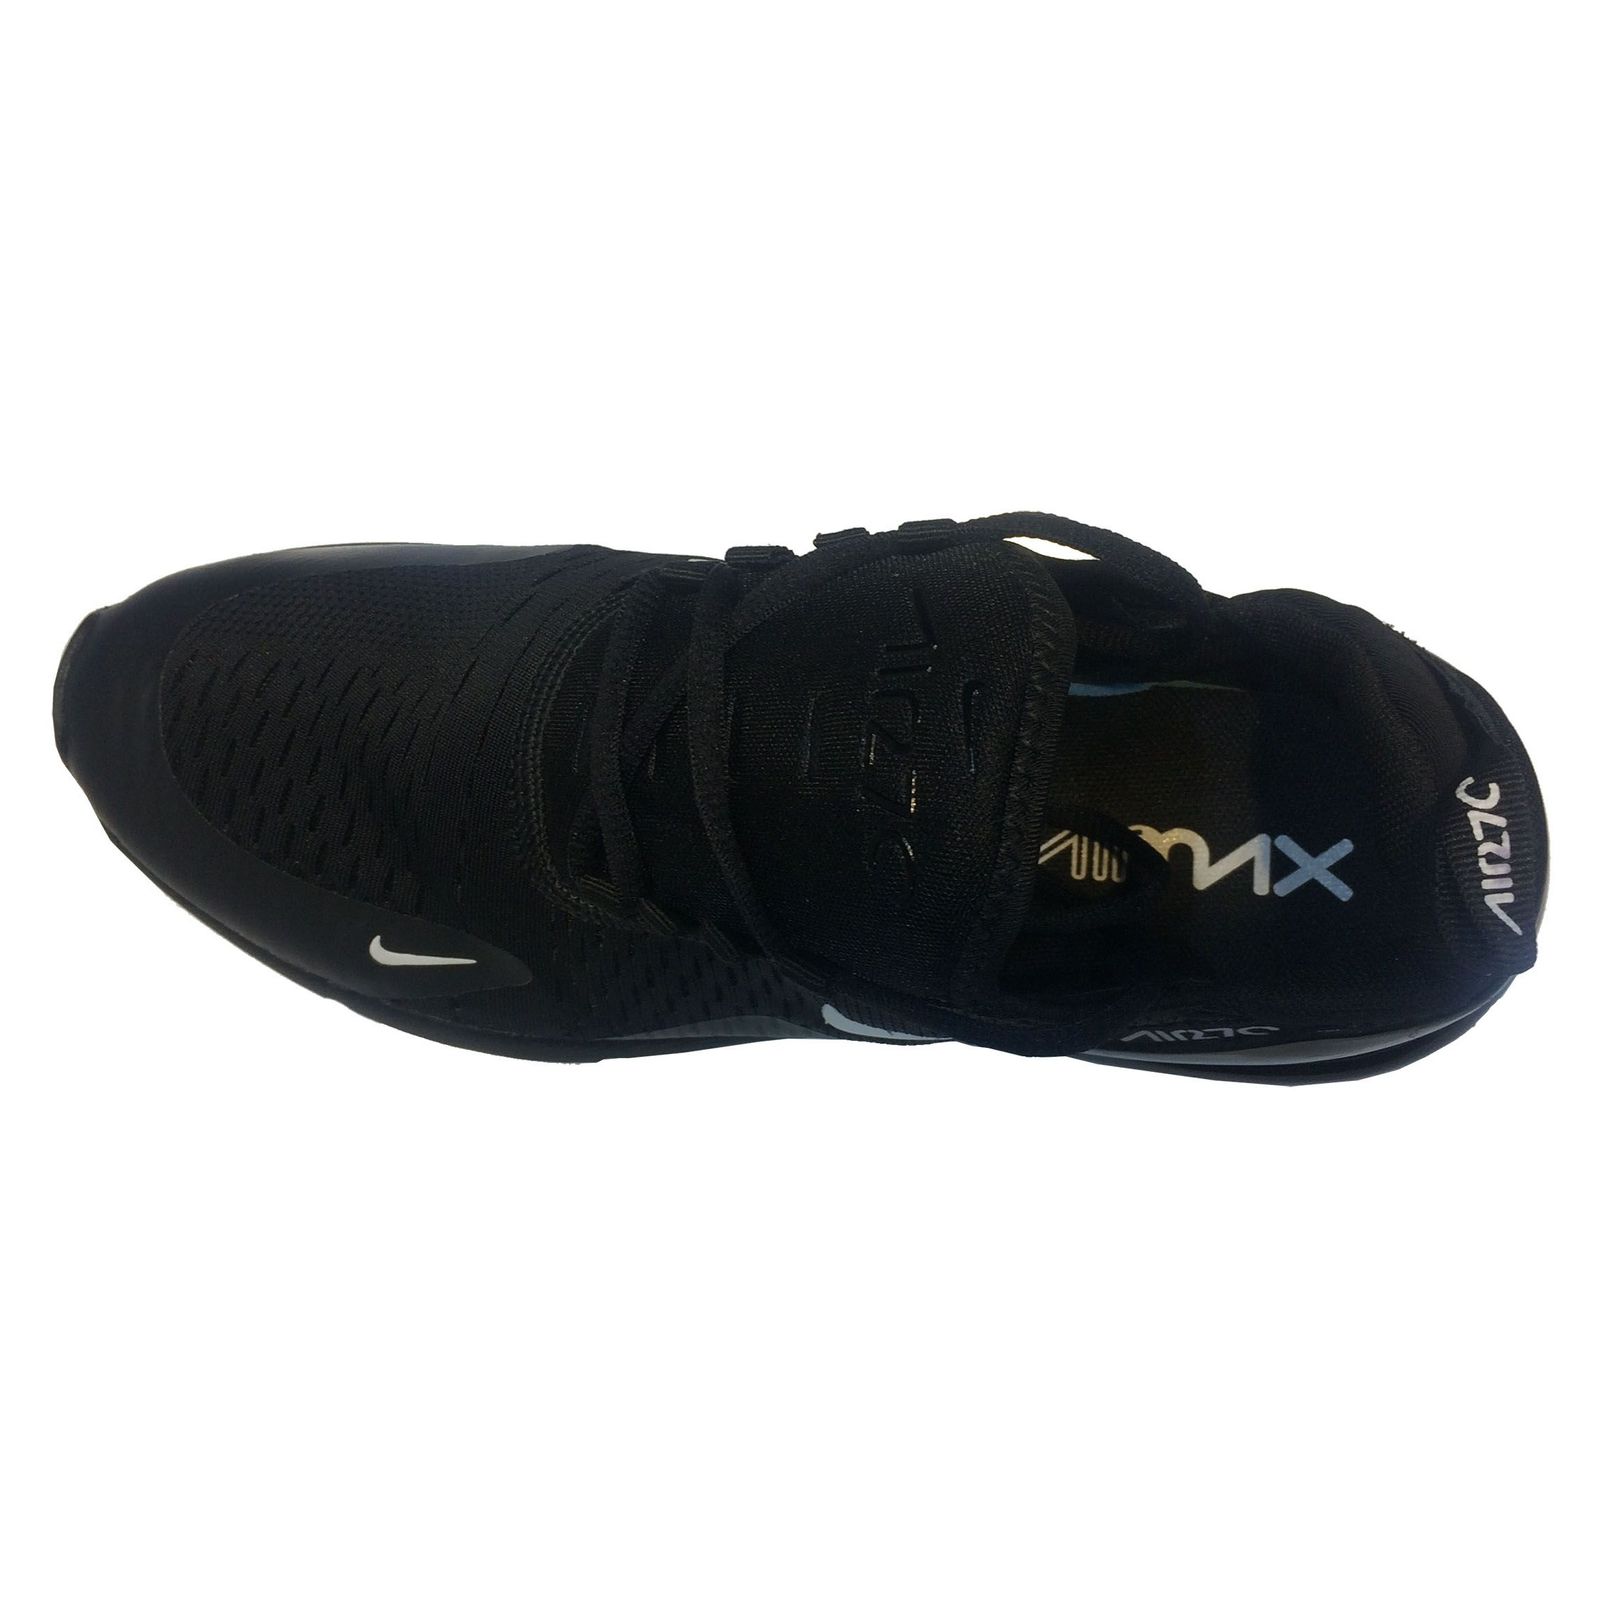  کفش مخصوص پیاده روی مردانه مدل AIR MAX 270